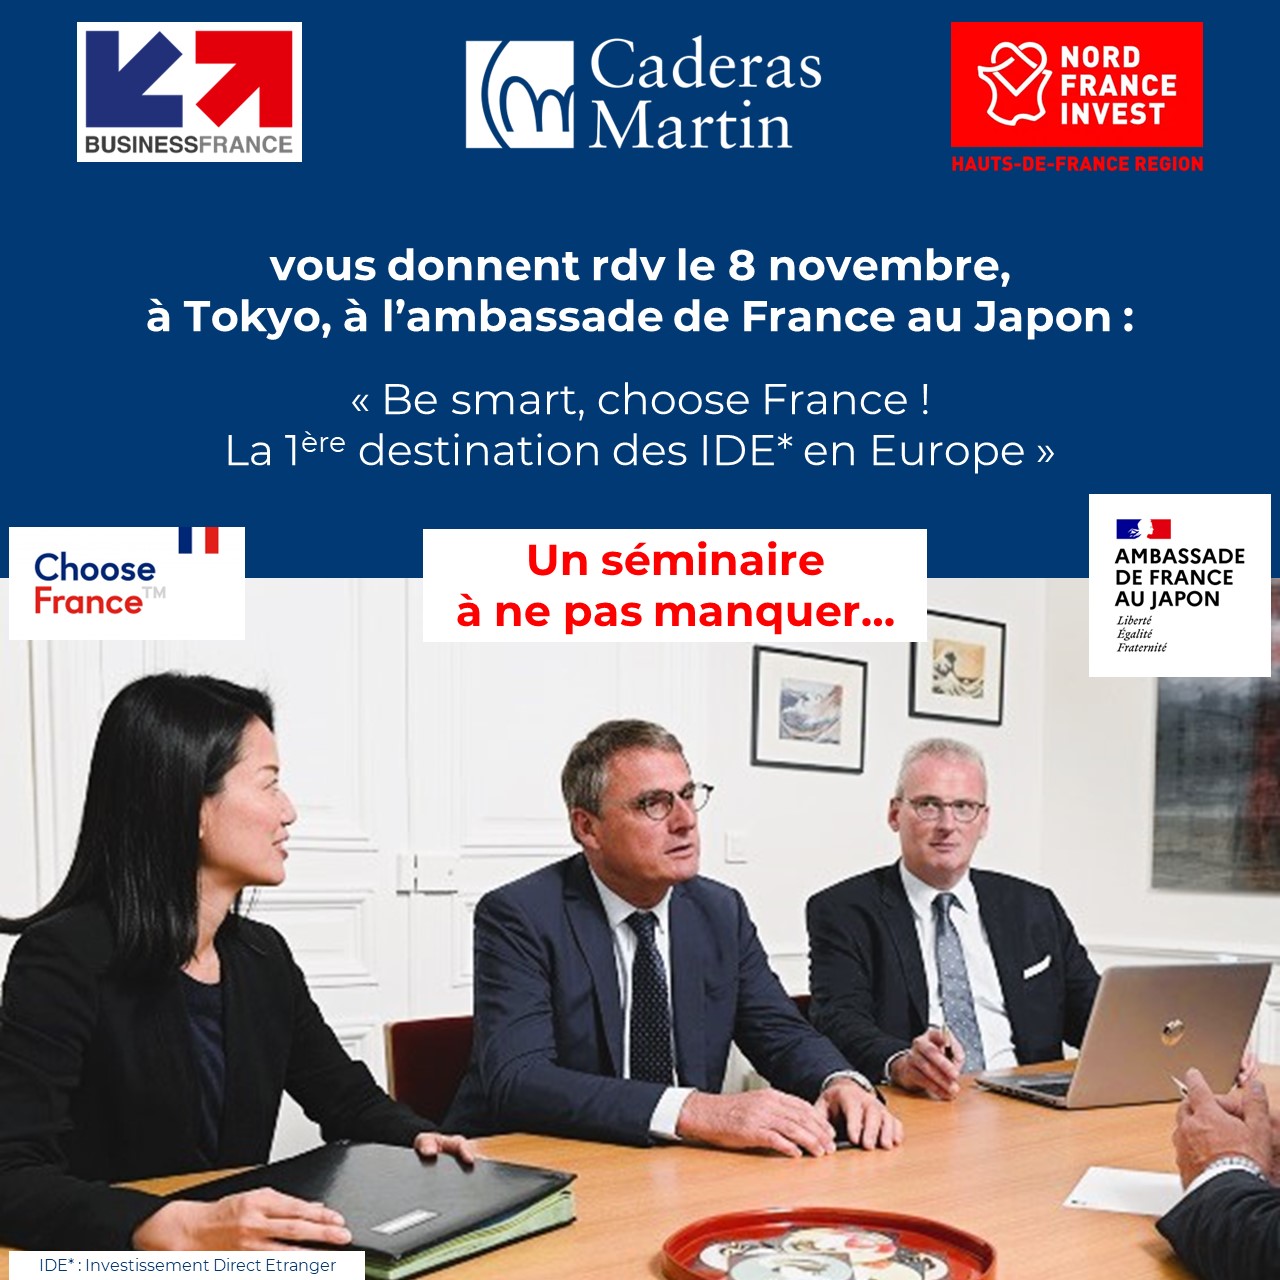 Caderas Martin organise un séminaire à Tokyo en collaboration avec Business France et Nord France Invest